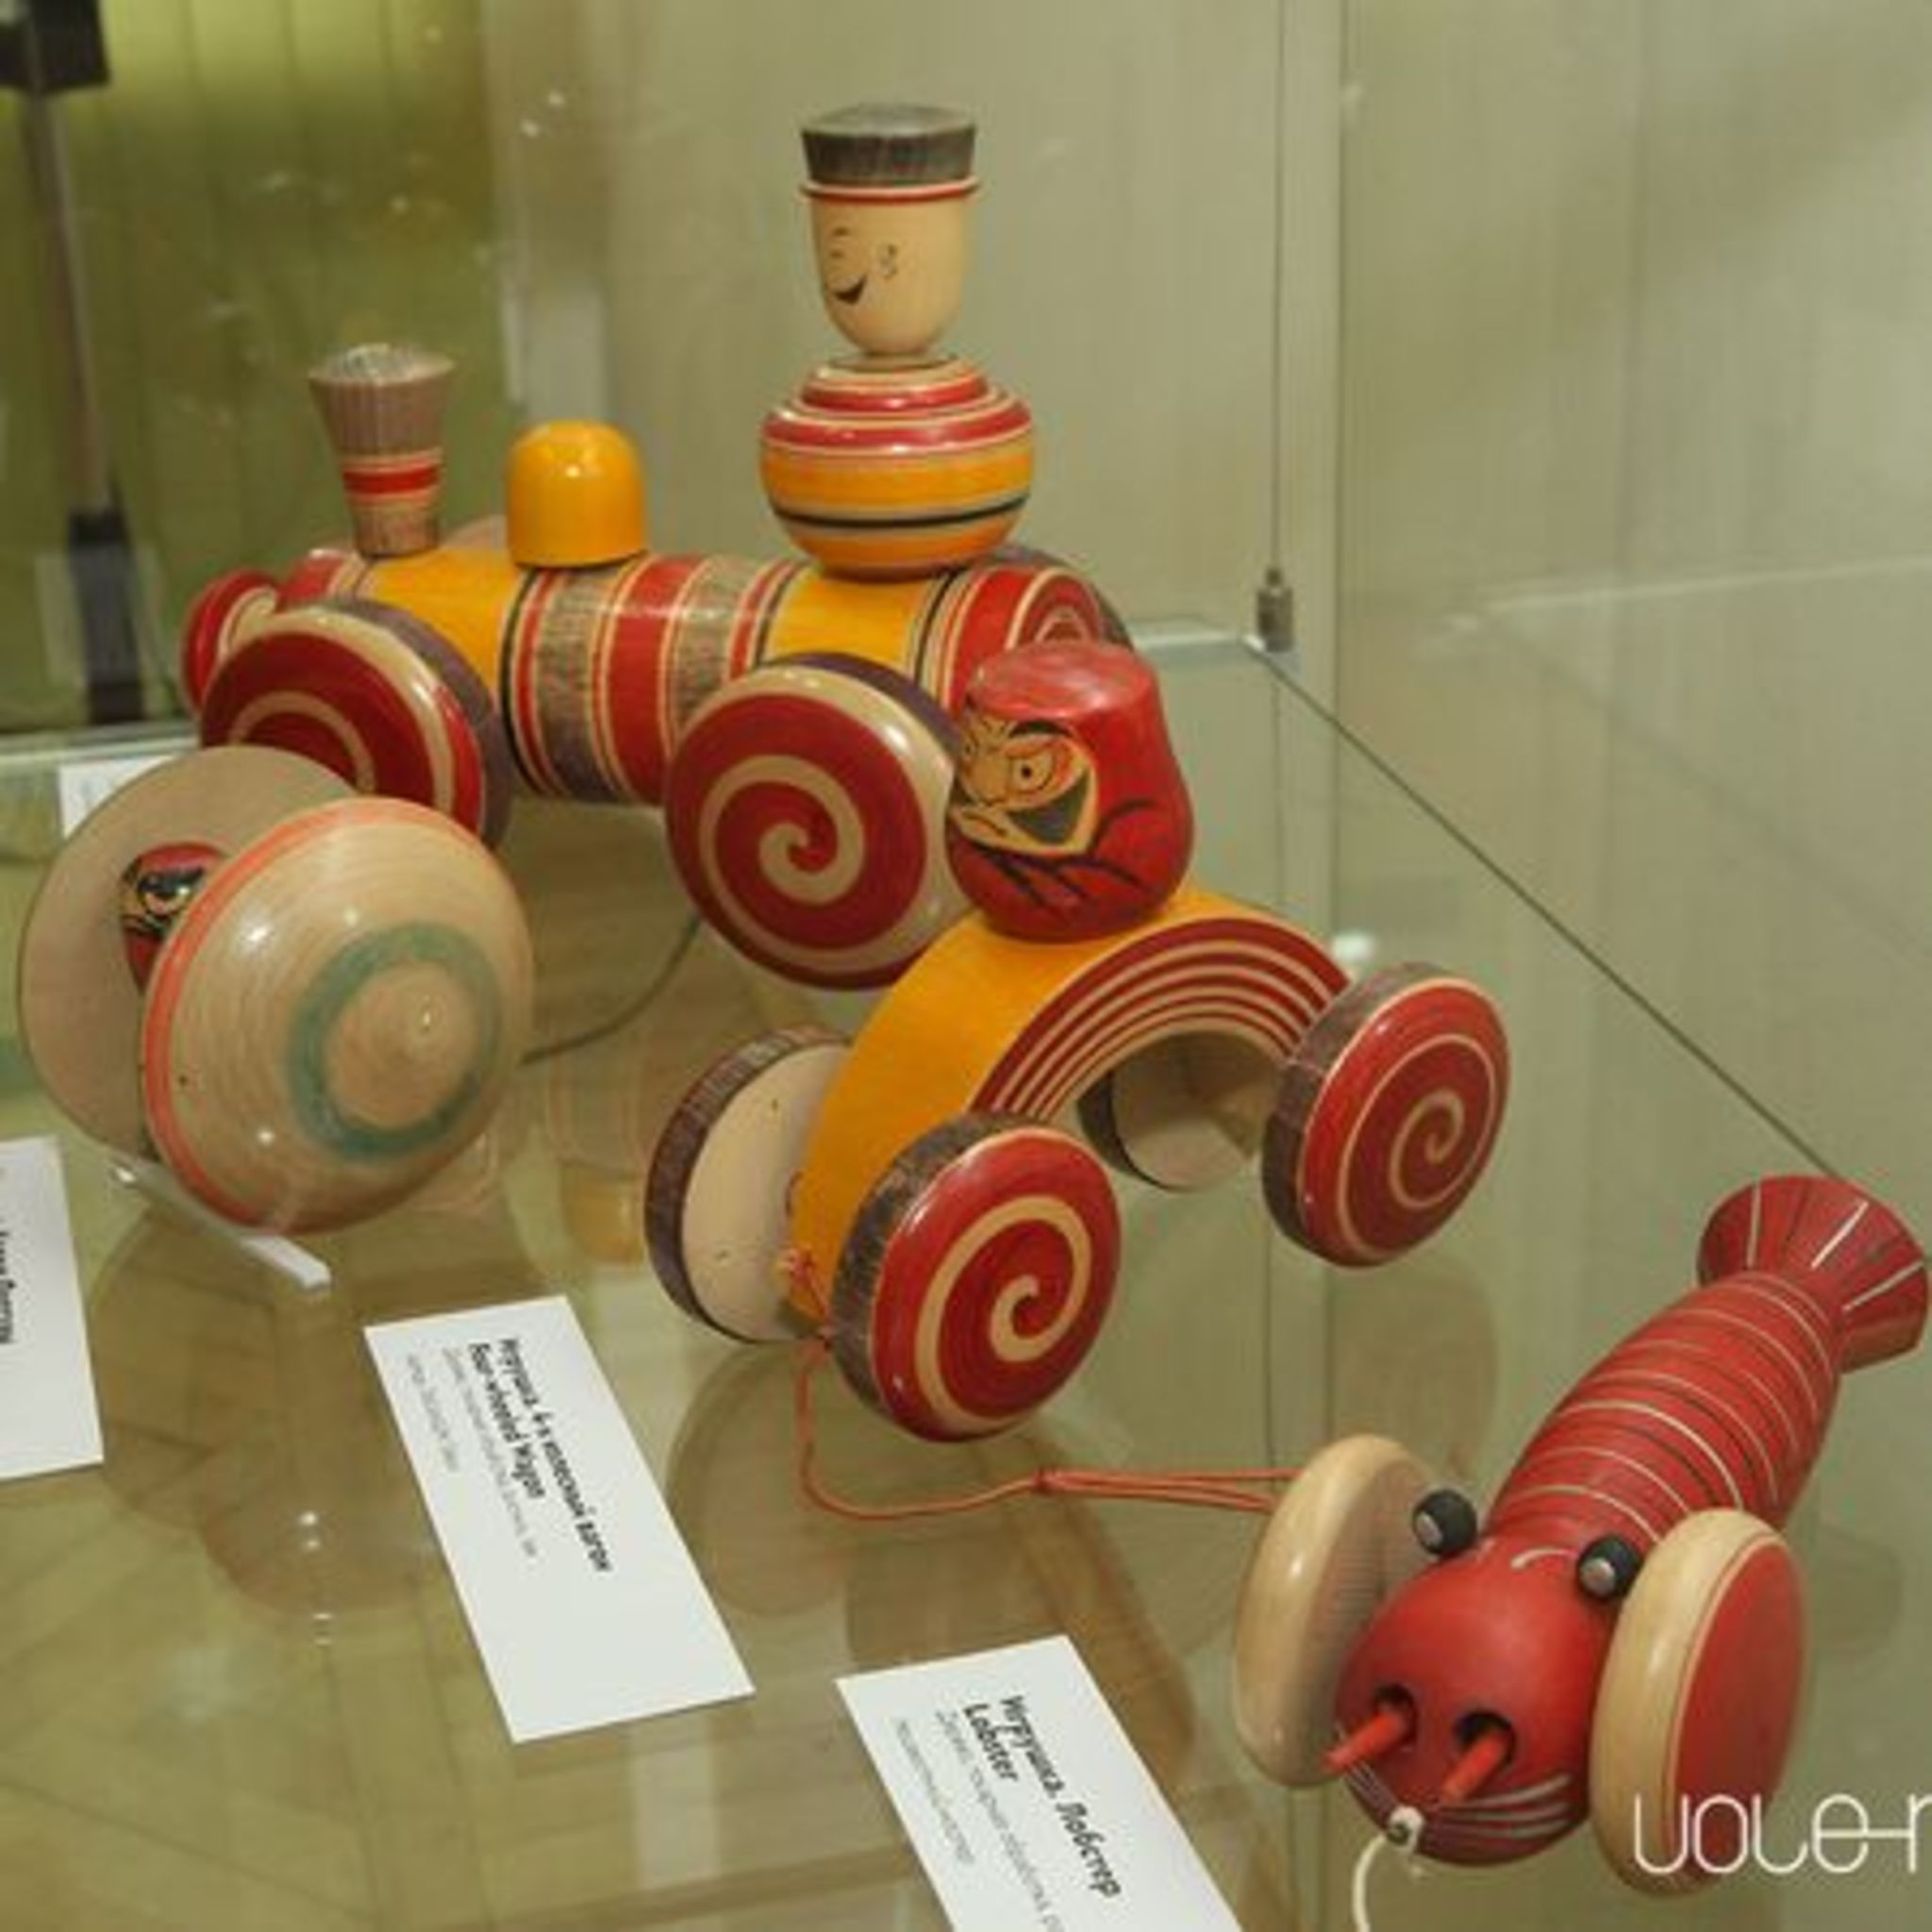 Exhibition World of Japanese Kokeshi dolls